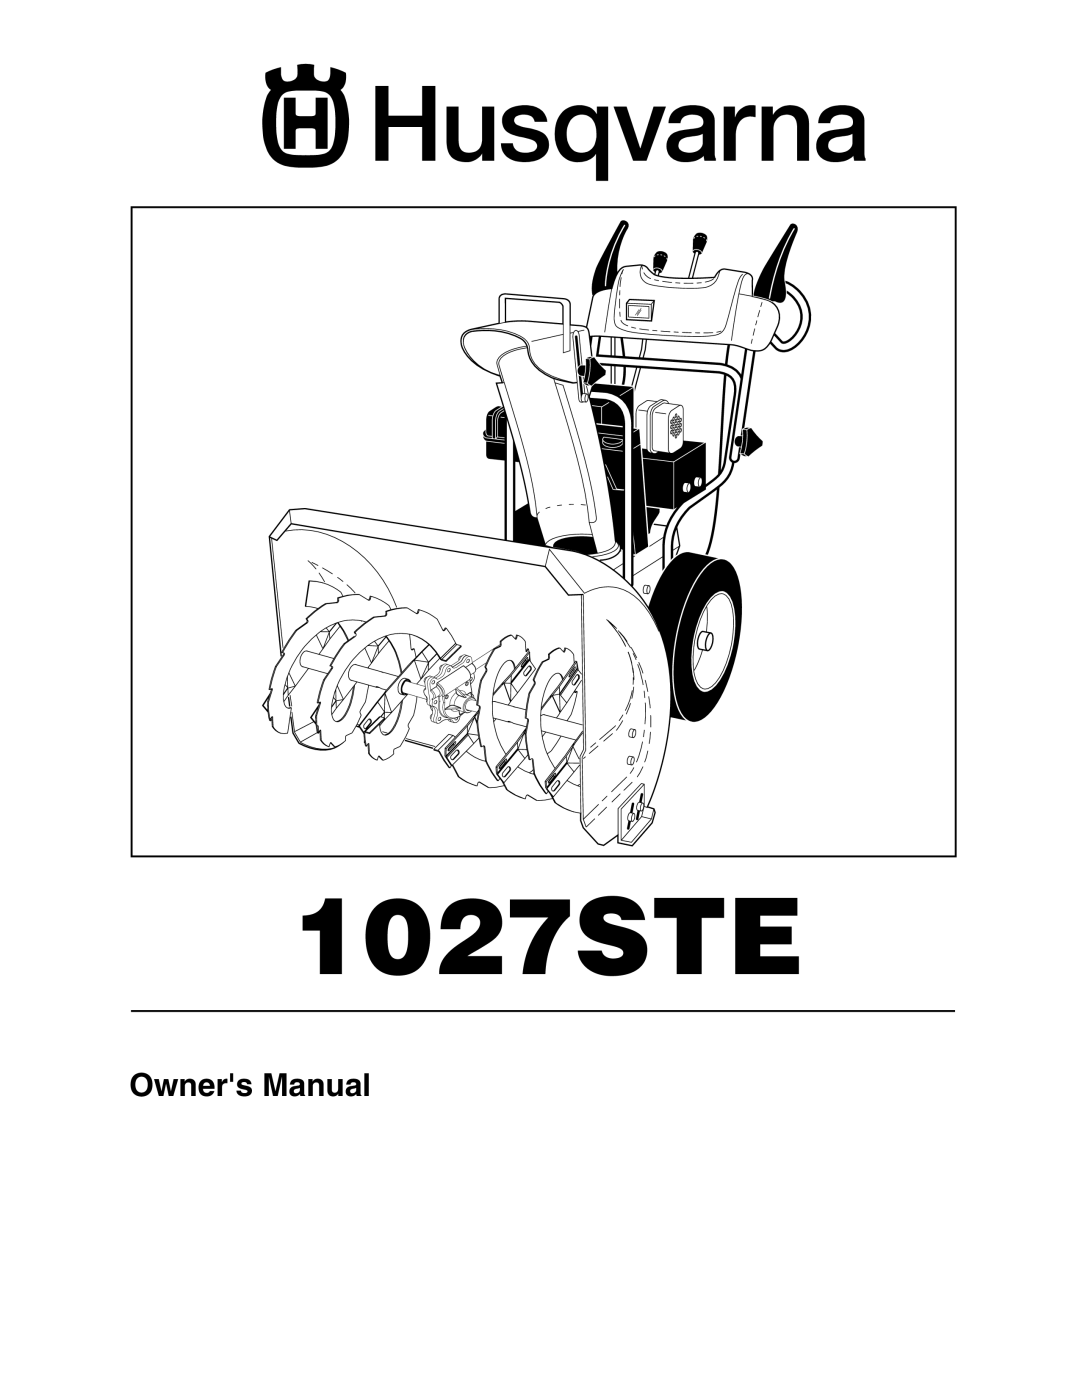 Husqvarna 1027STE owner manual 